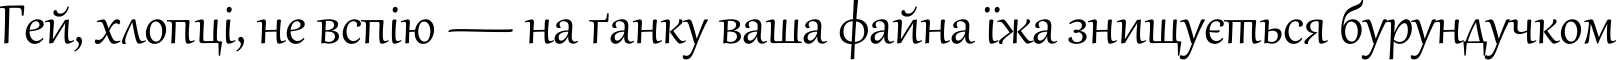 Пример написания шрифтом Gabriola текста на украинском